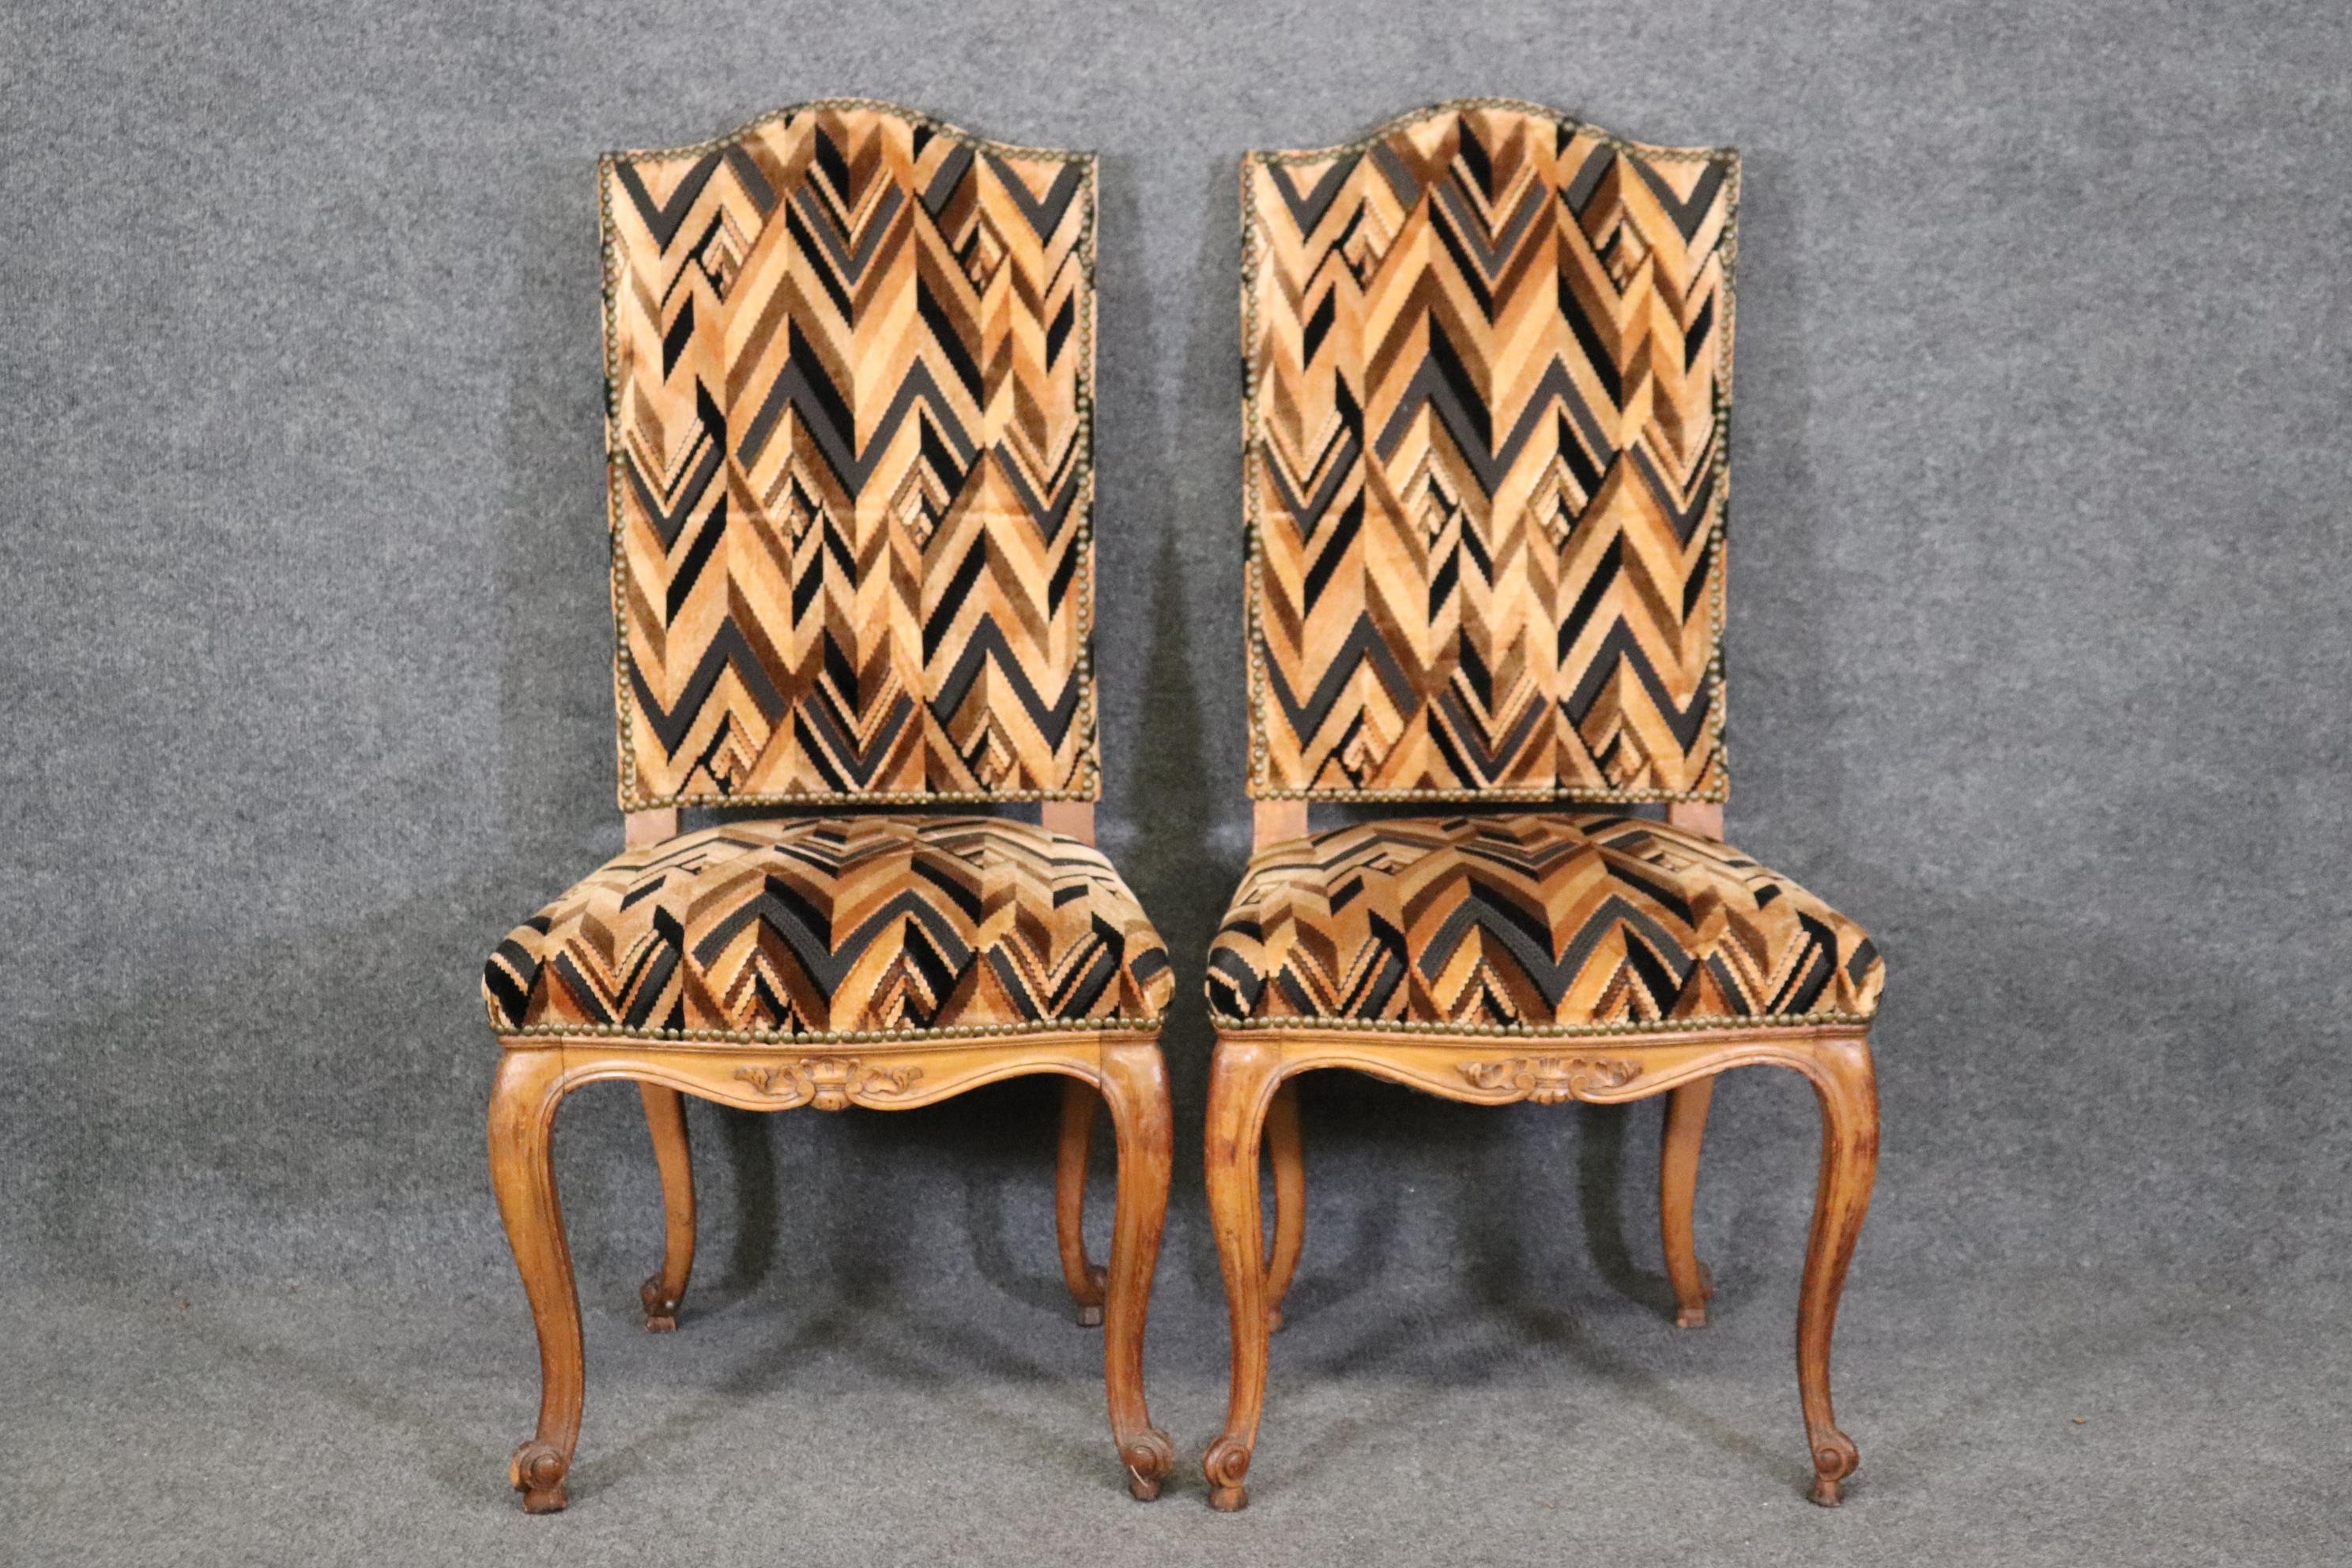 Il s'agit d'une belle paire de chaises en bon état. Les chaises mesurent 42,75 de haut x 21 de large x 22,5 de profondeur et ont une hauteur d'assise de 19 pouces. Les chaises sont garnies de têtes de clous et datent des années 1920. 




Nous